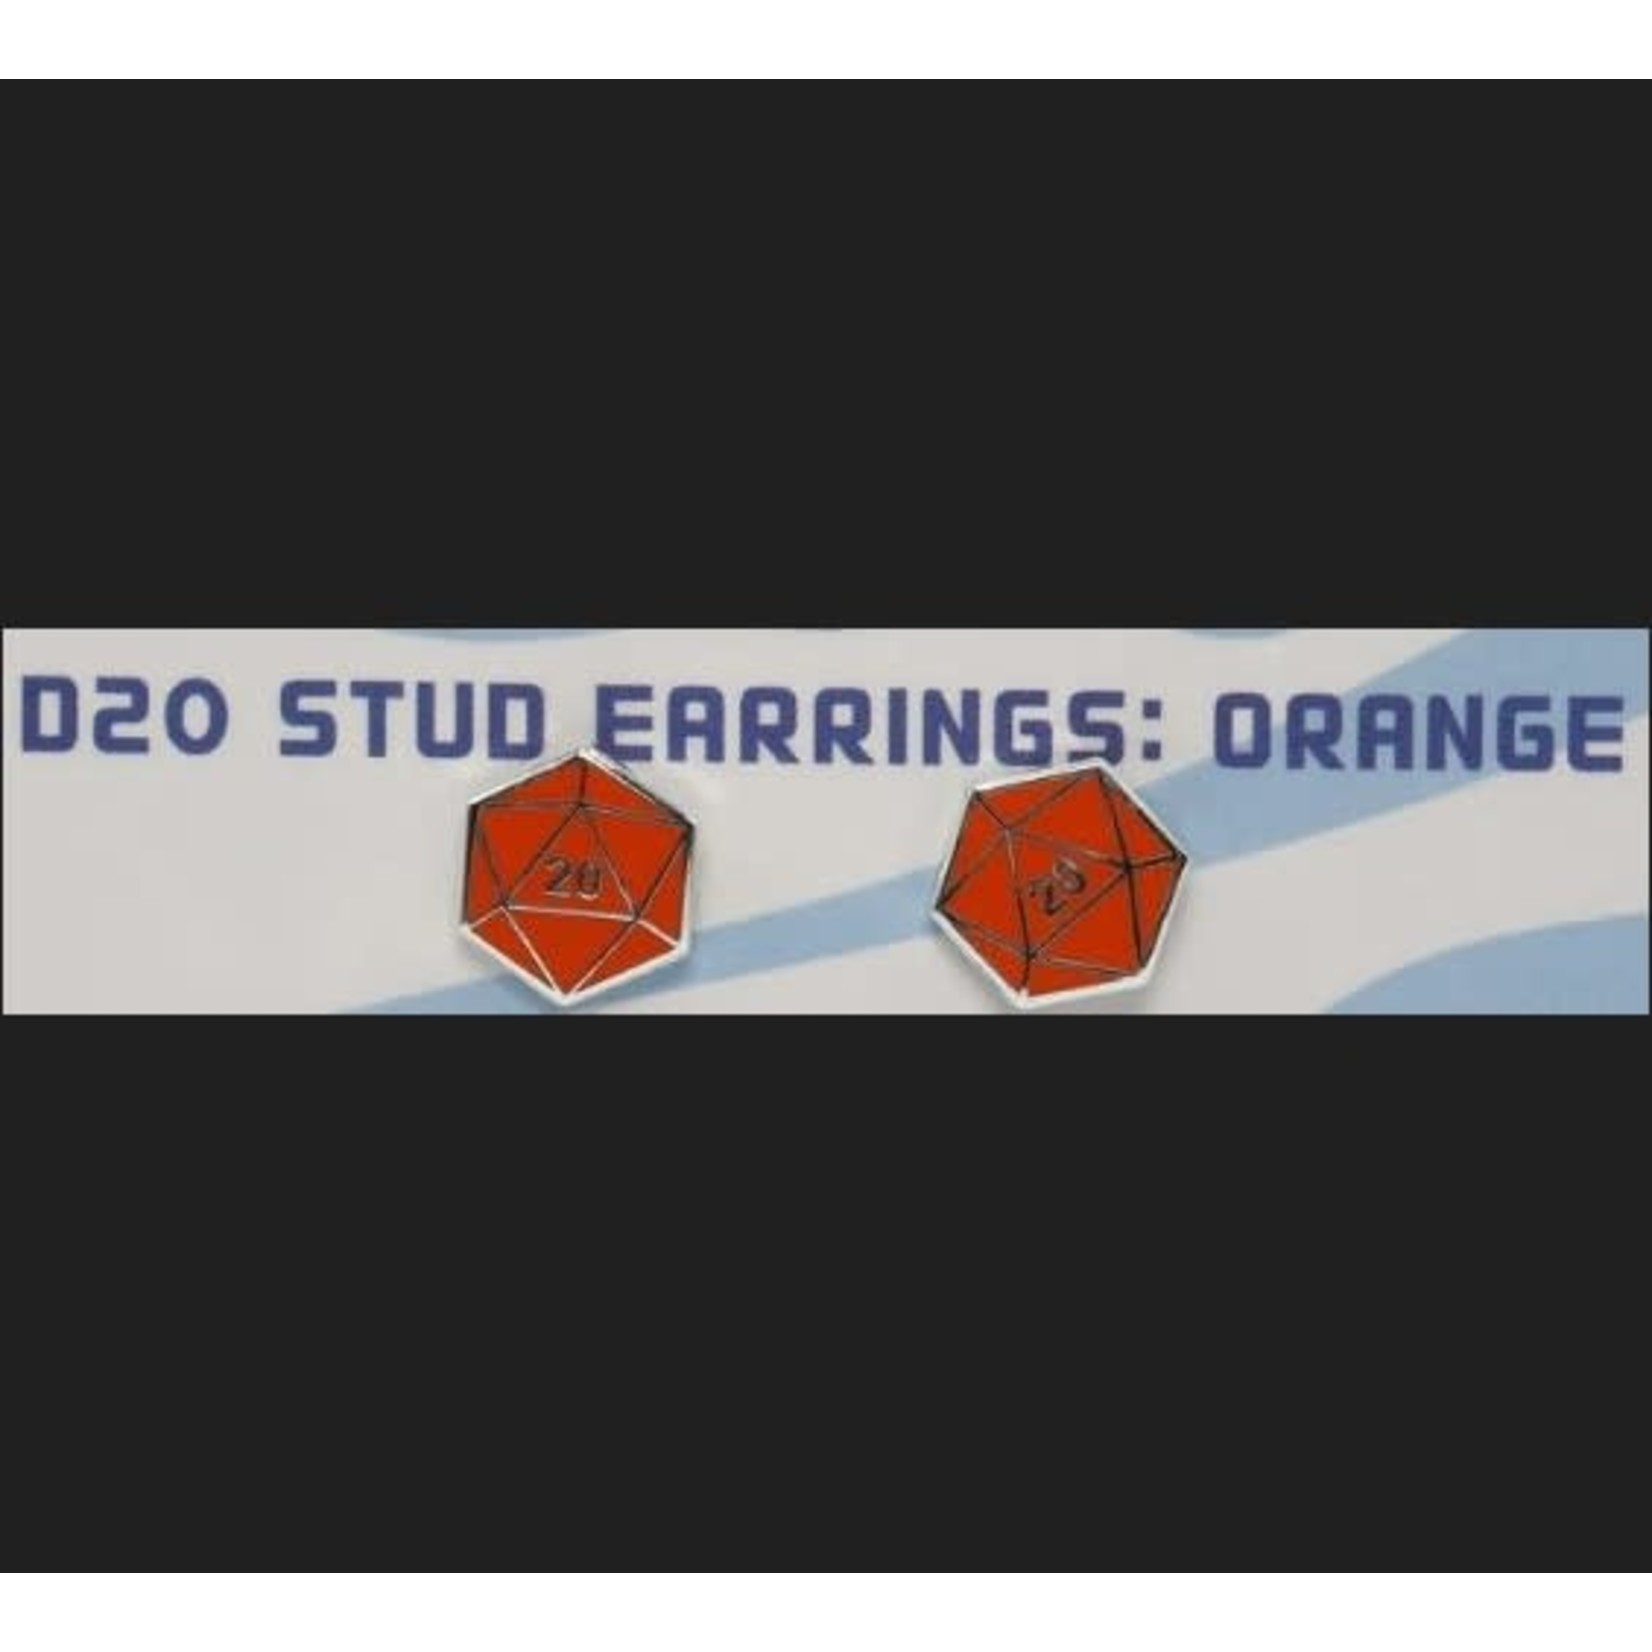 Foam Brain D20 Stud Earrings: Orange